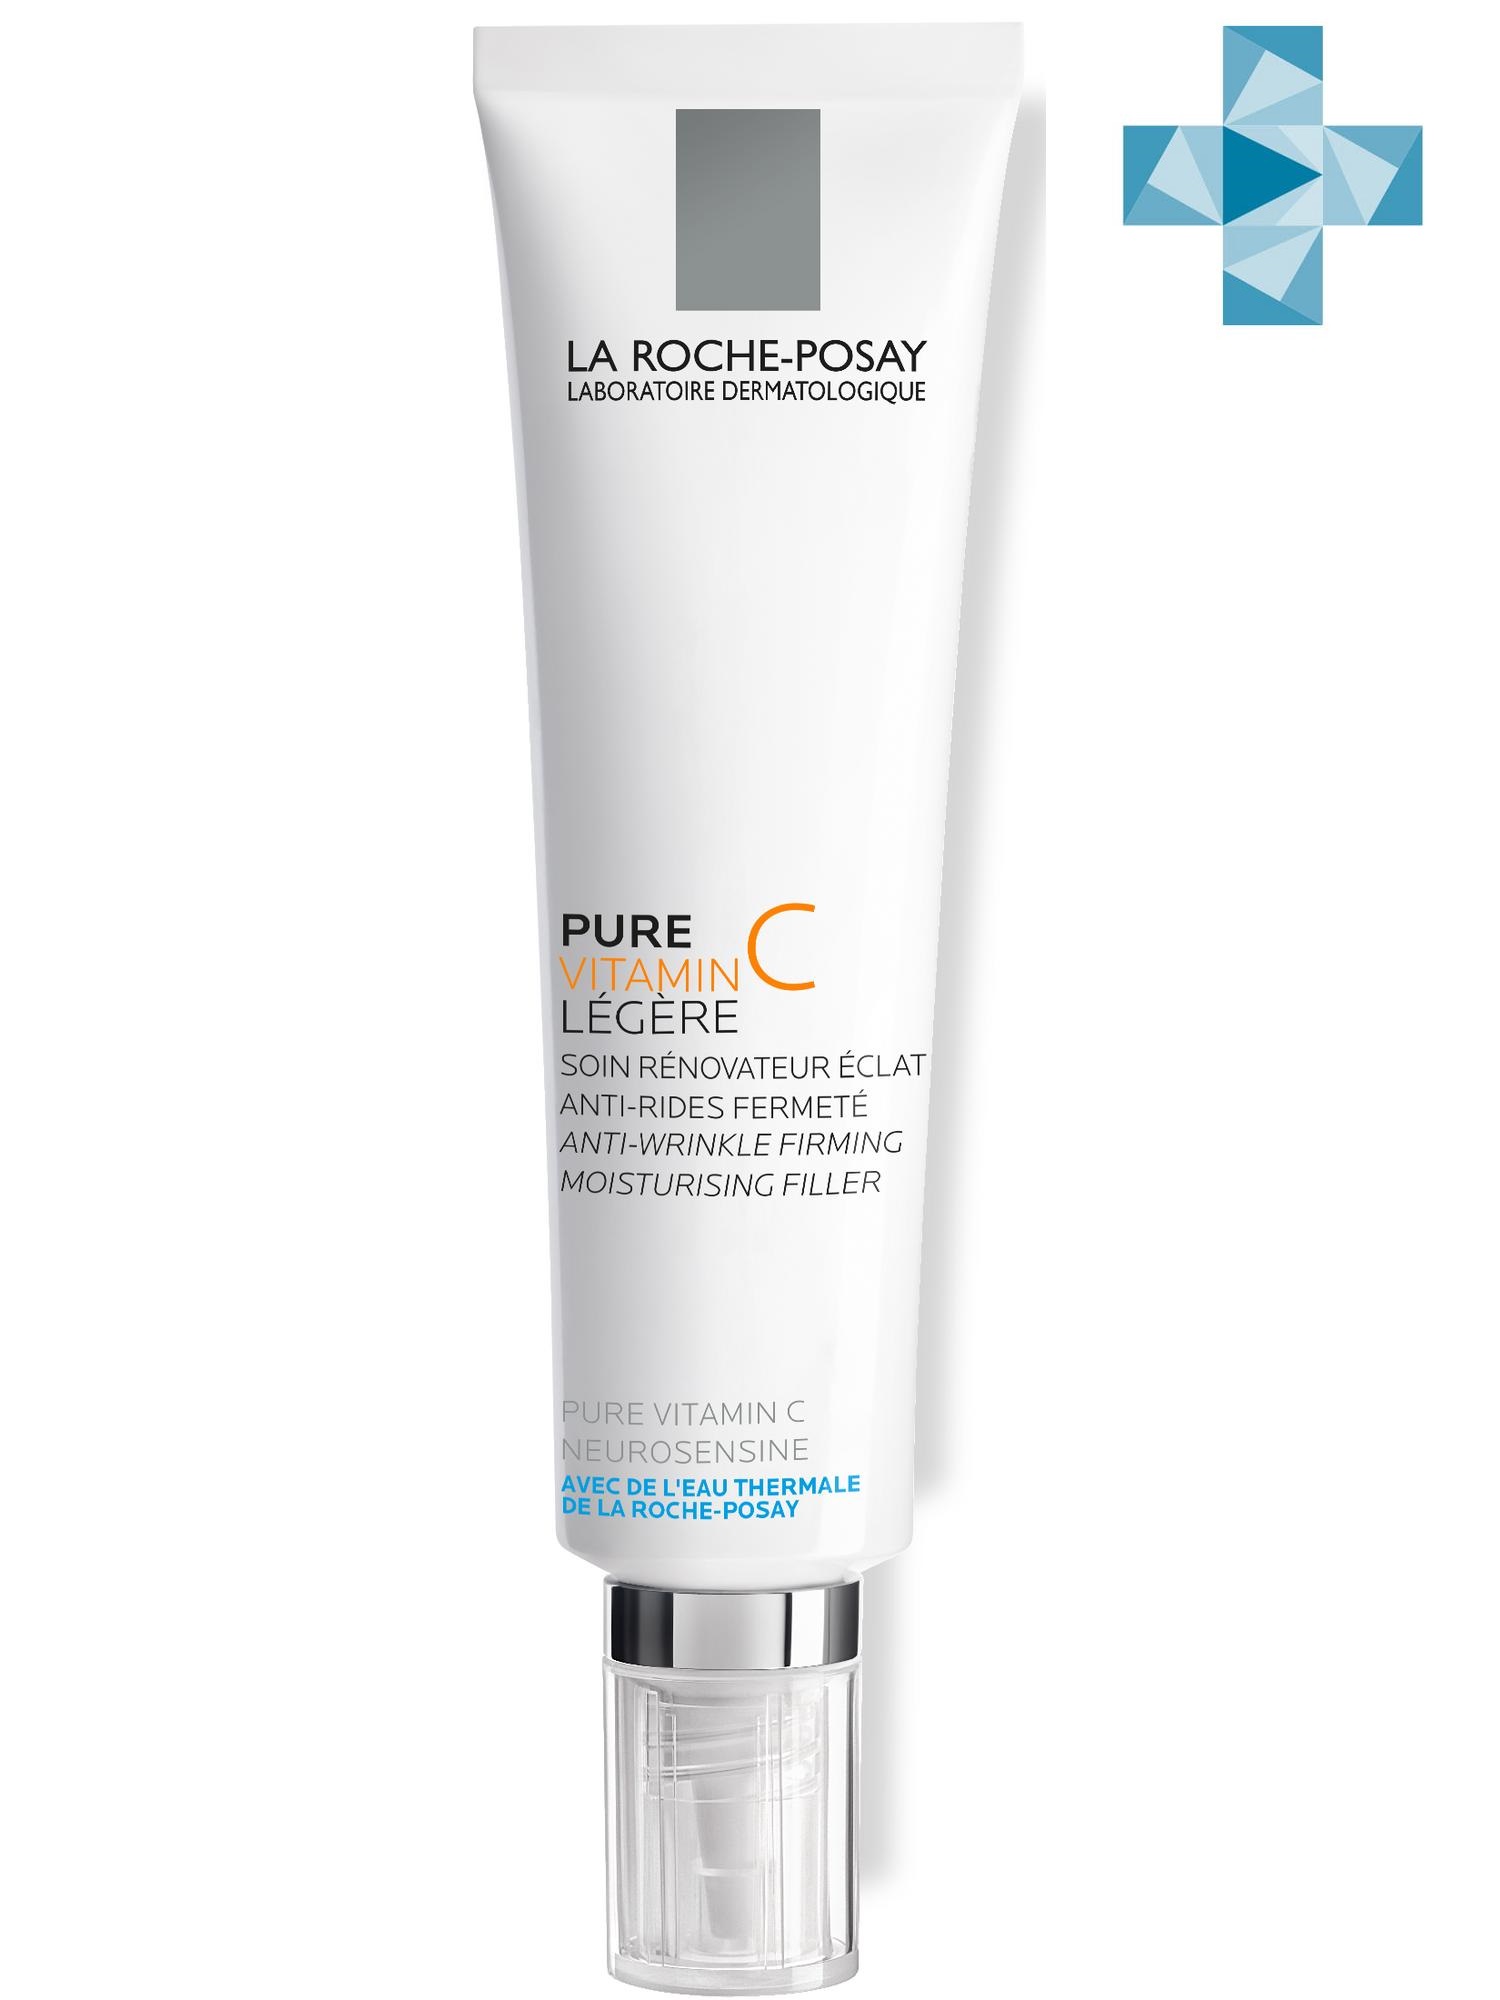 La Roche-Posay Антивозрастной крем-филлер для заполнения морщин для нормальной и комбинированной кожи Витамин С, 40 мл (La Roche-Posay, Vitamin C)